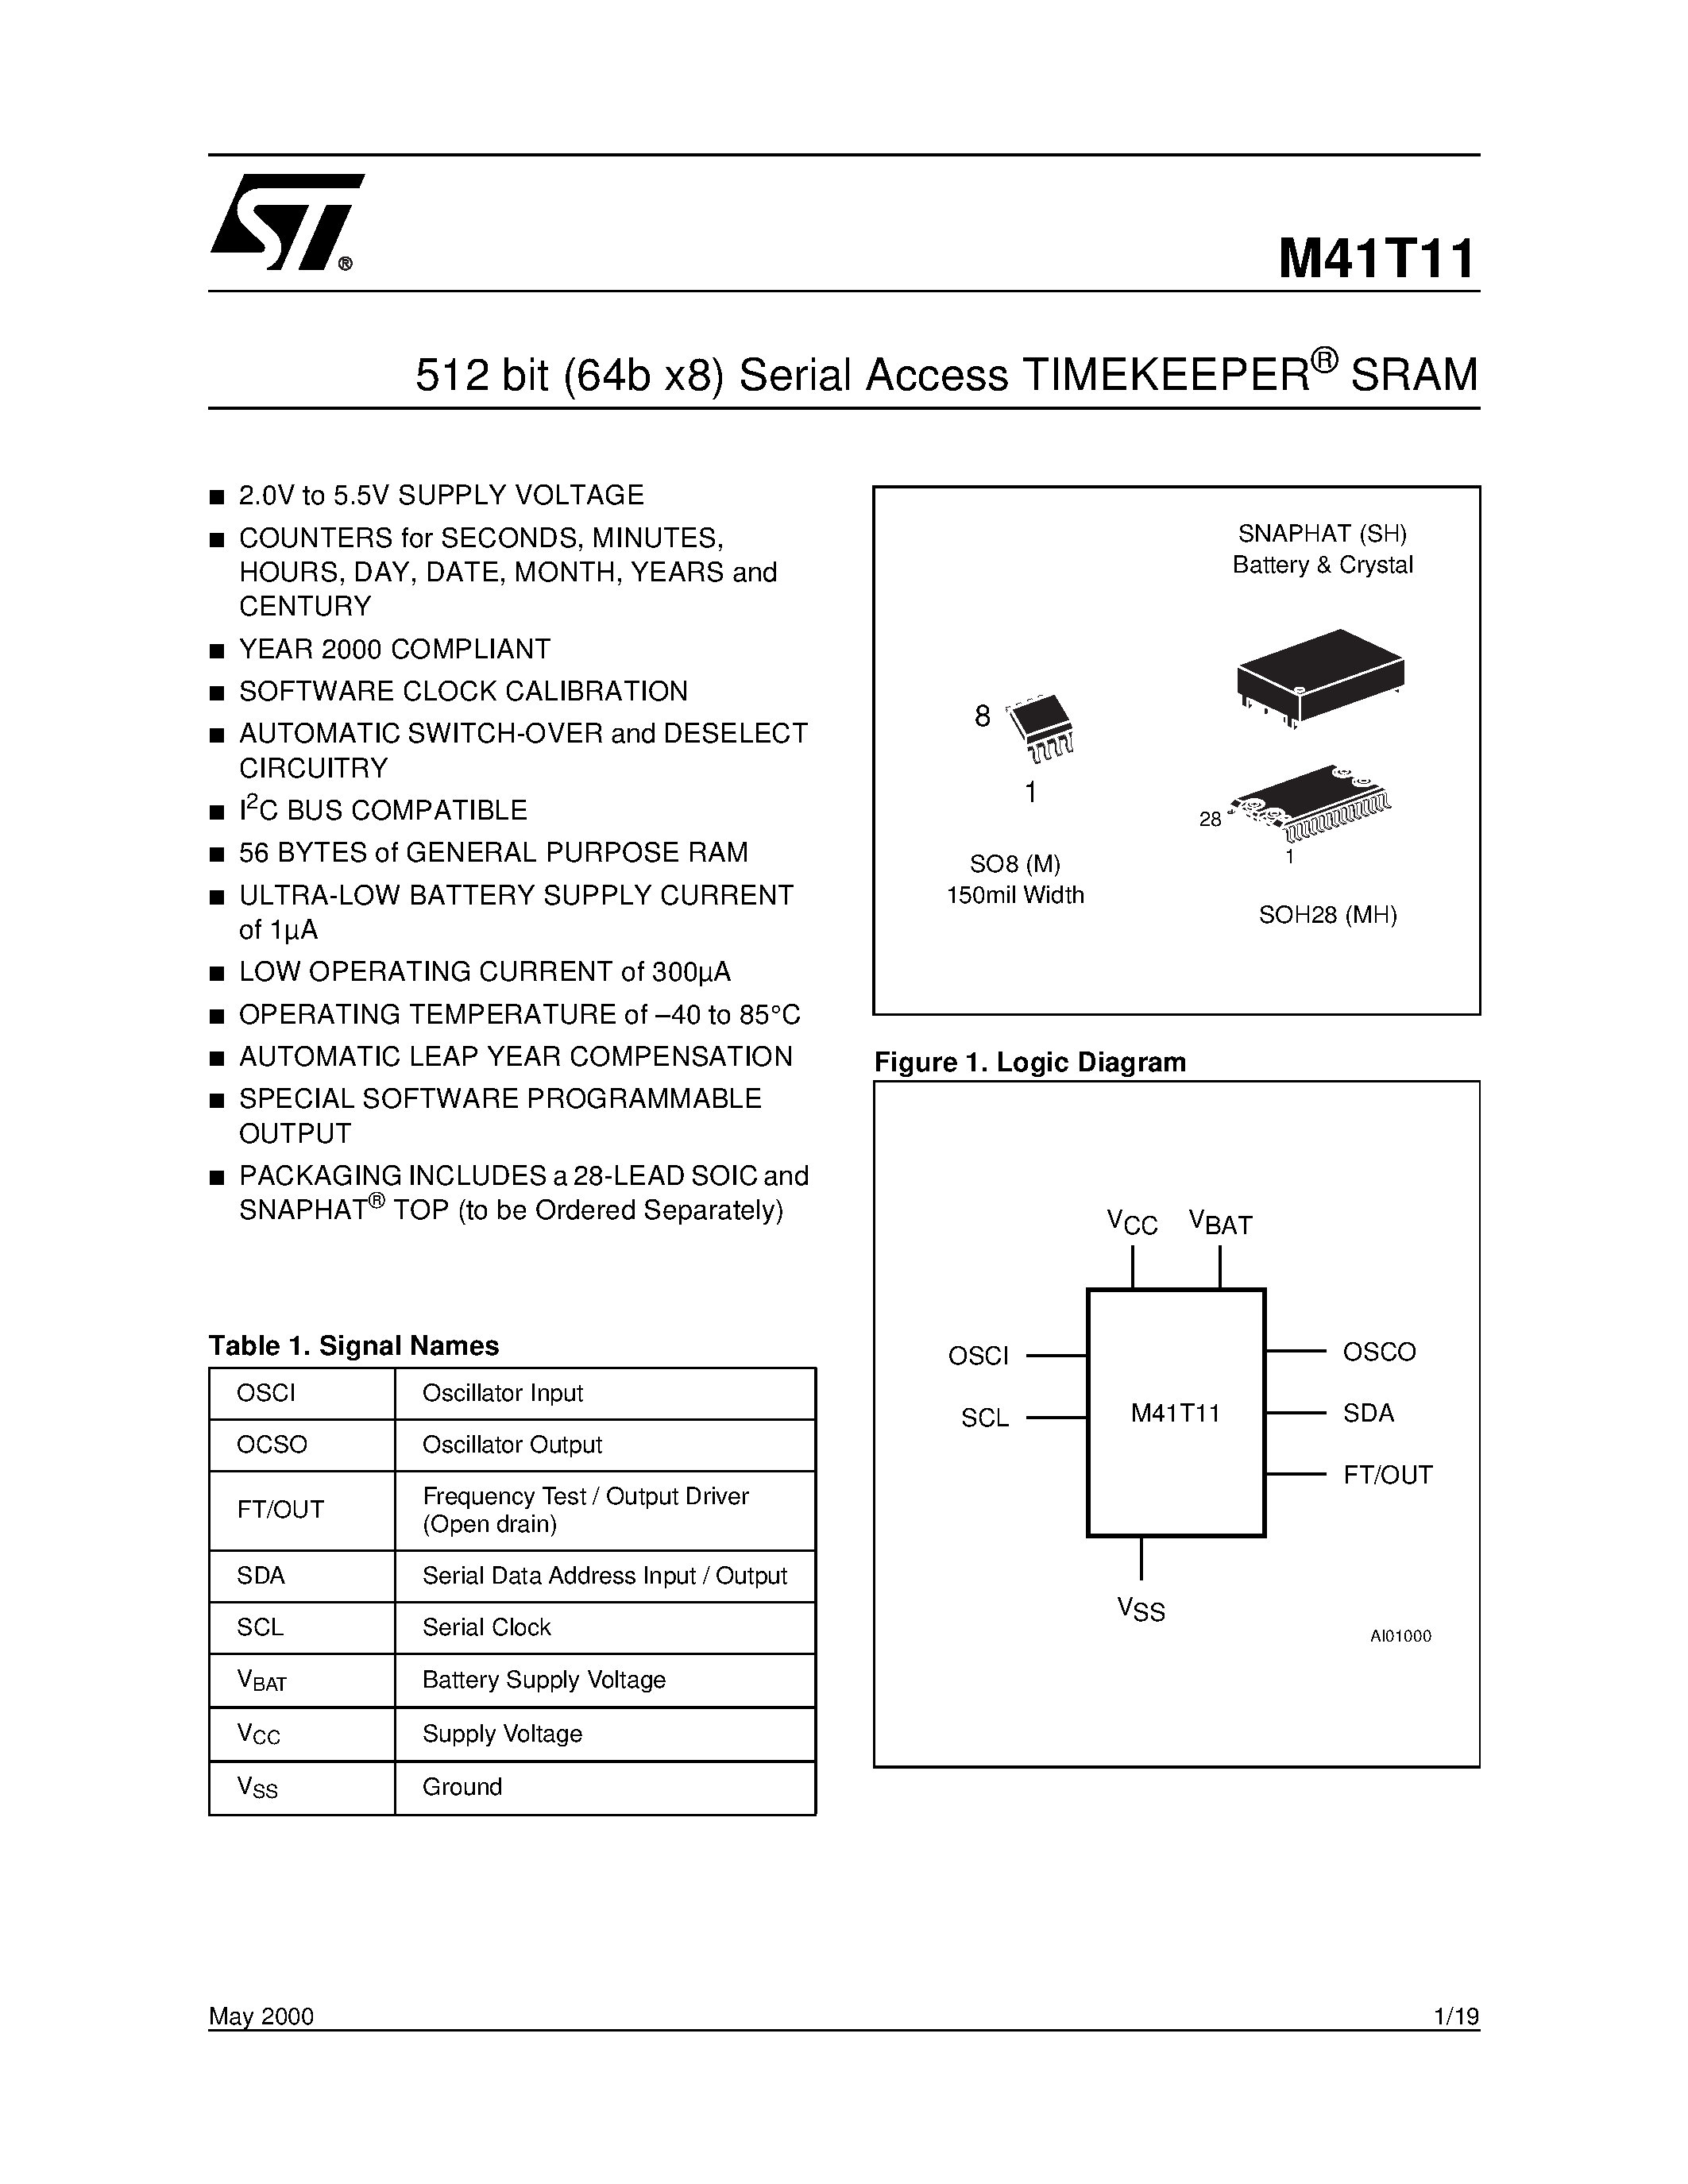 Datasheet M41TMH6TR - 512 bit 64b x8 Serial Access TIMEKEEPER SRAM page 1